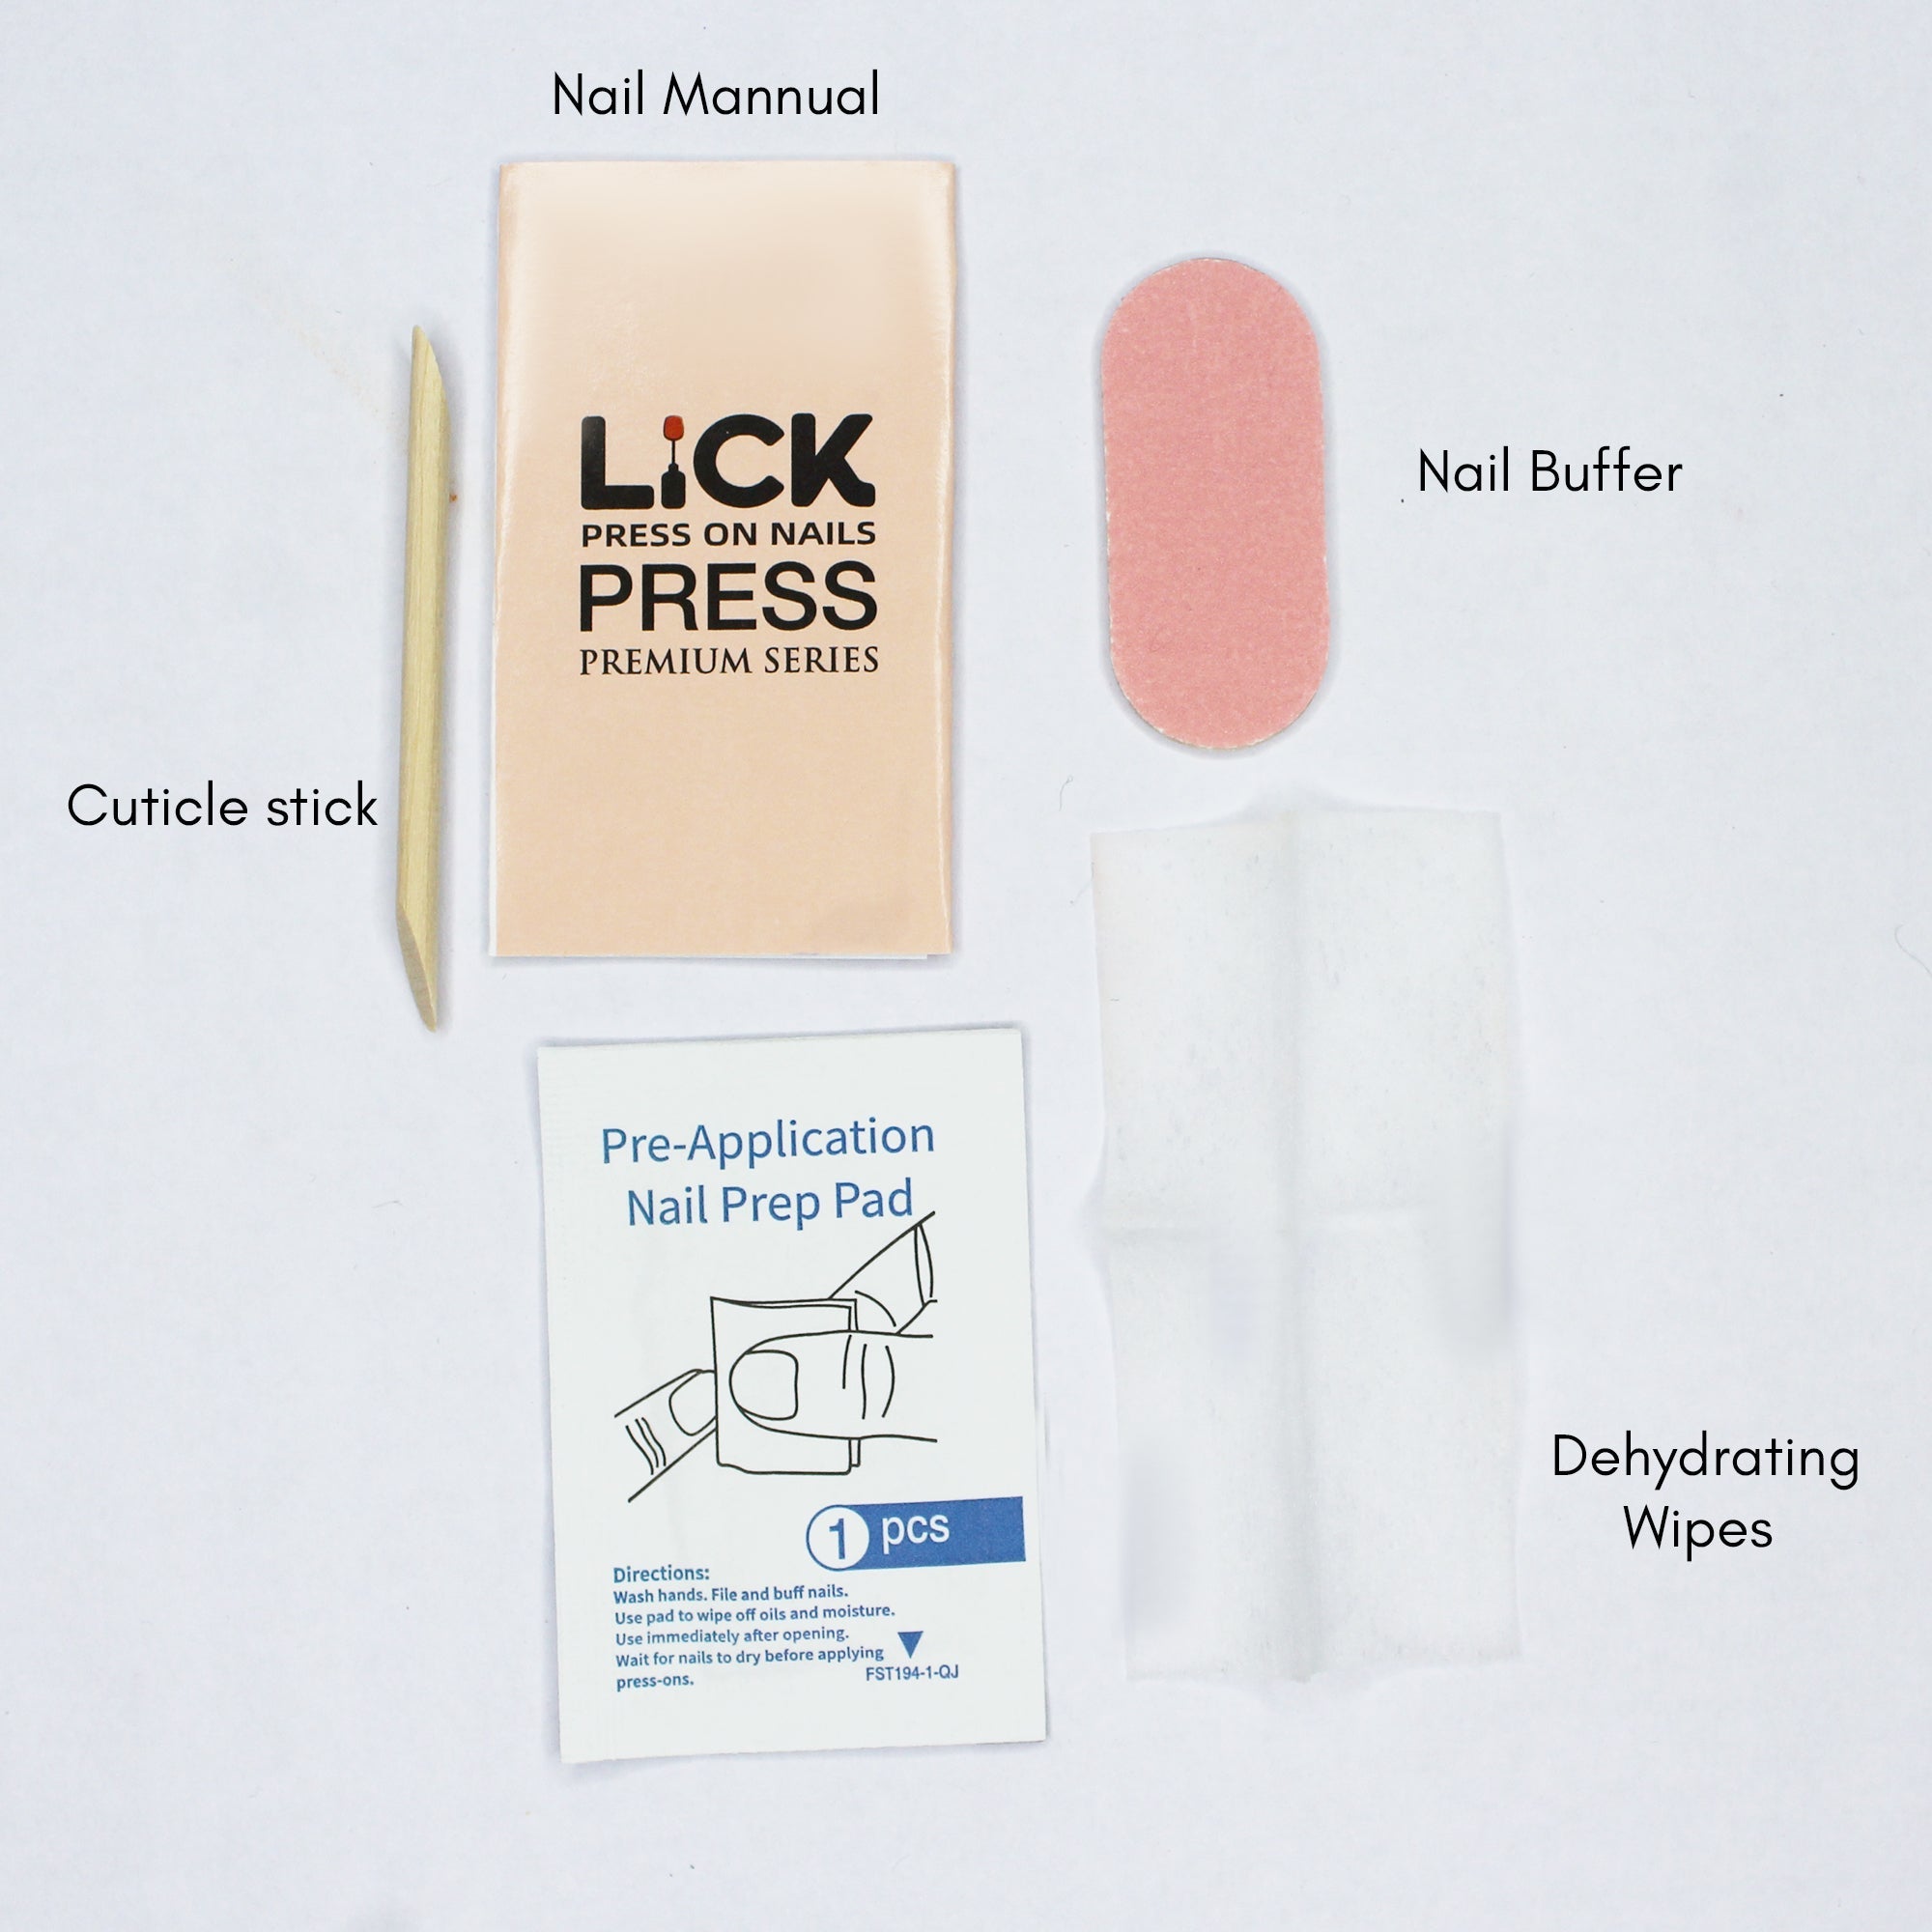 Lick Nail Matte Finish Light Nude Square Shape Press On Nails Pack Of 24 Pcs